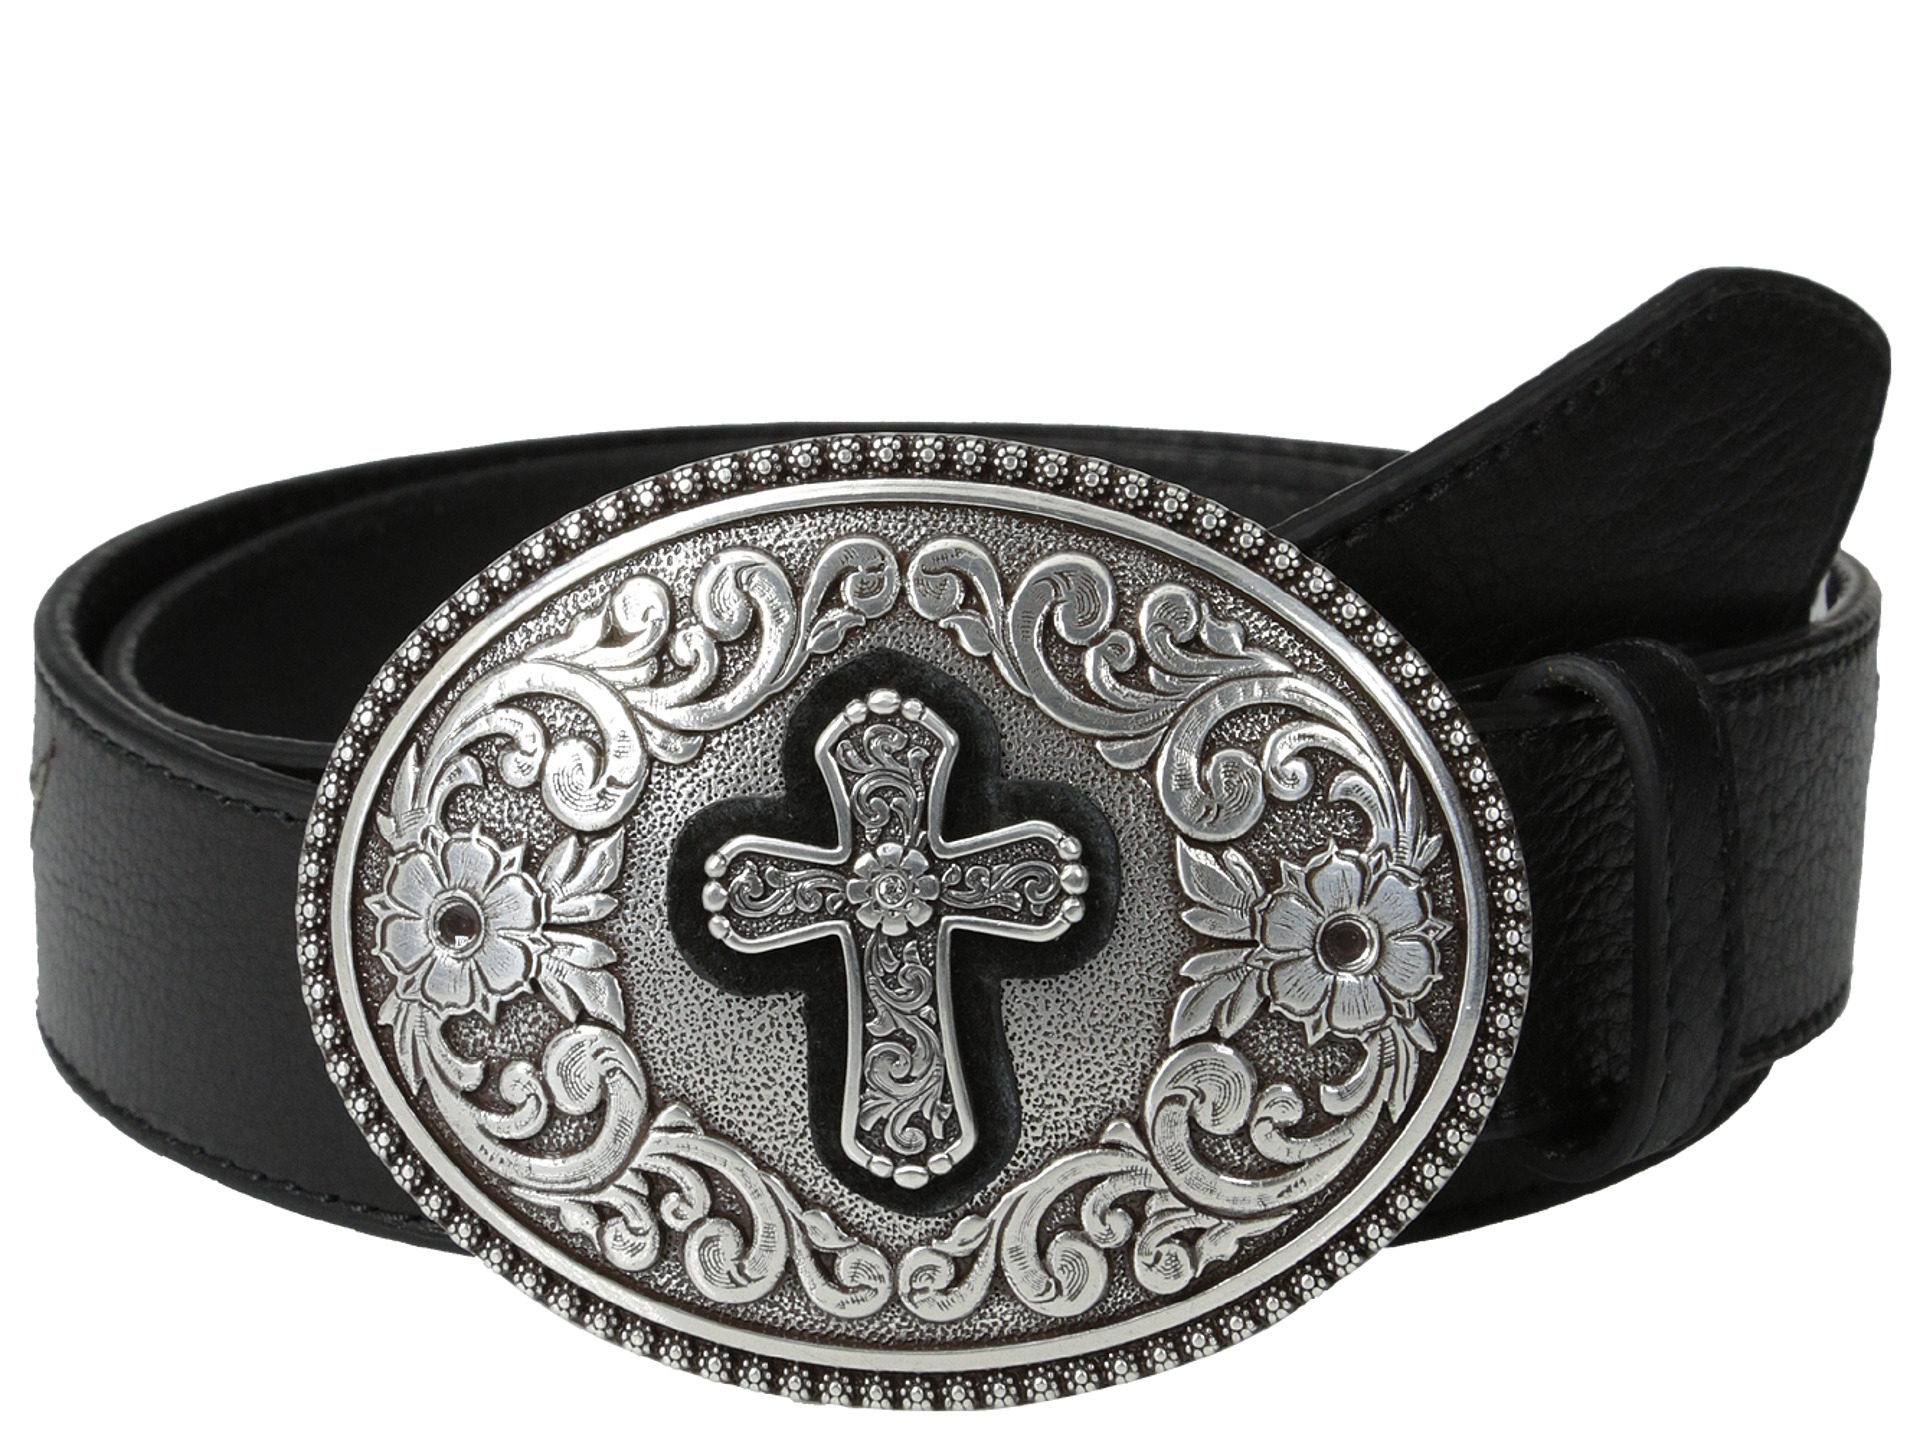 Lyst - Ariat Winged Belt W/ Large Cross Buckle in Black